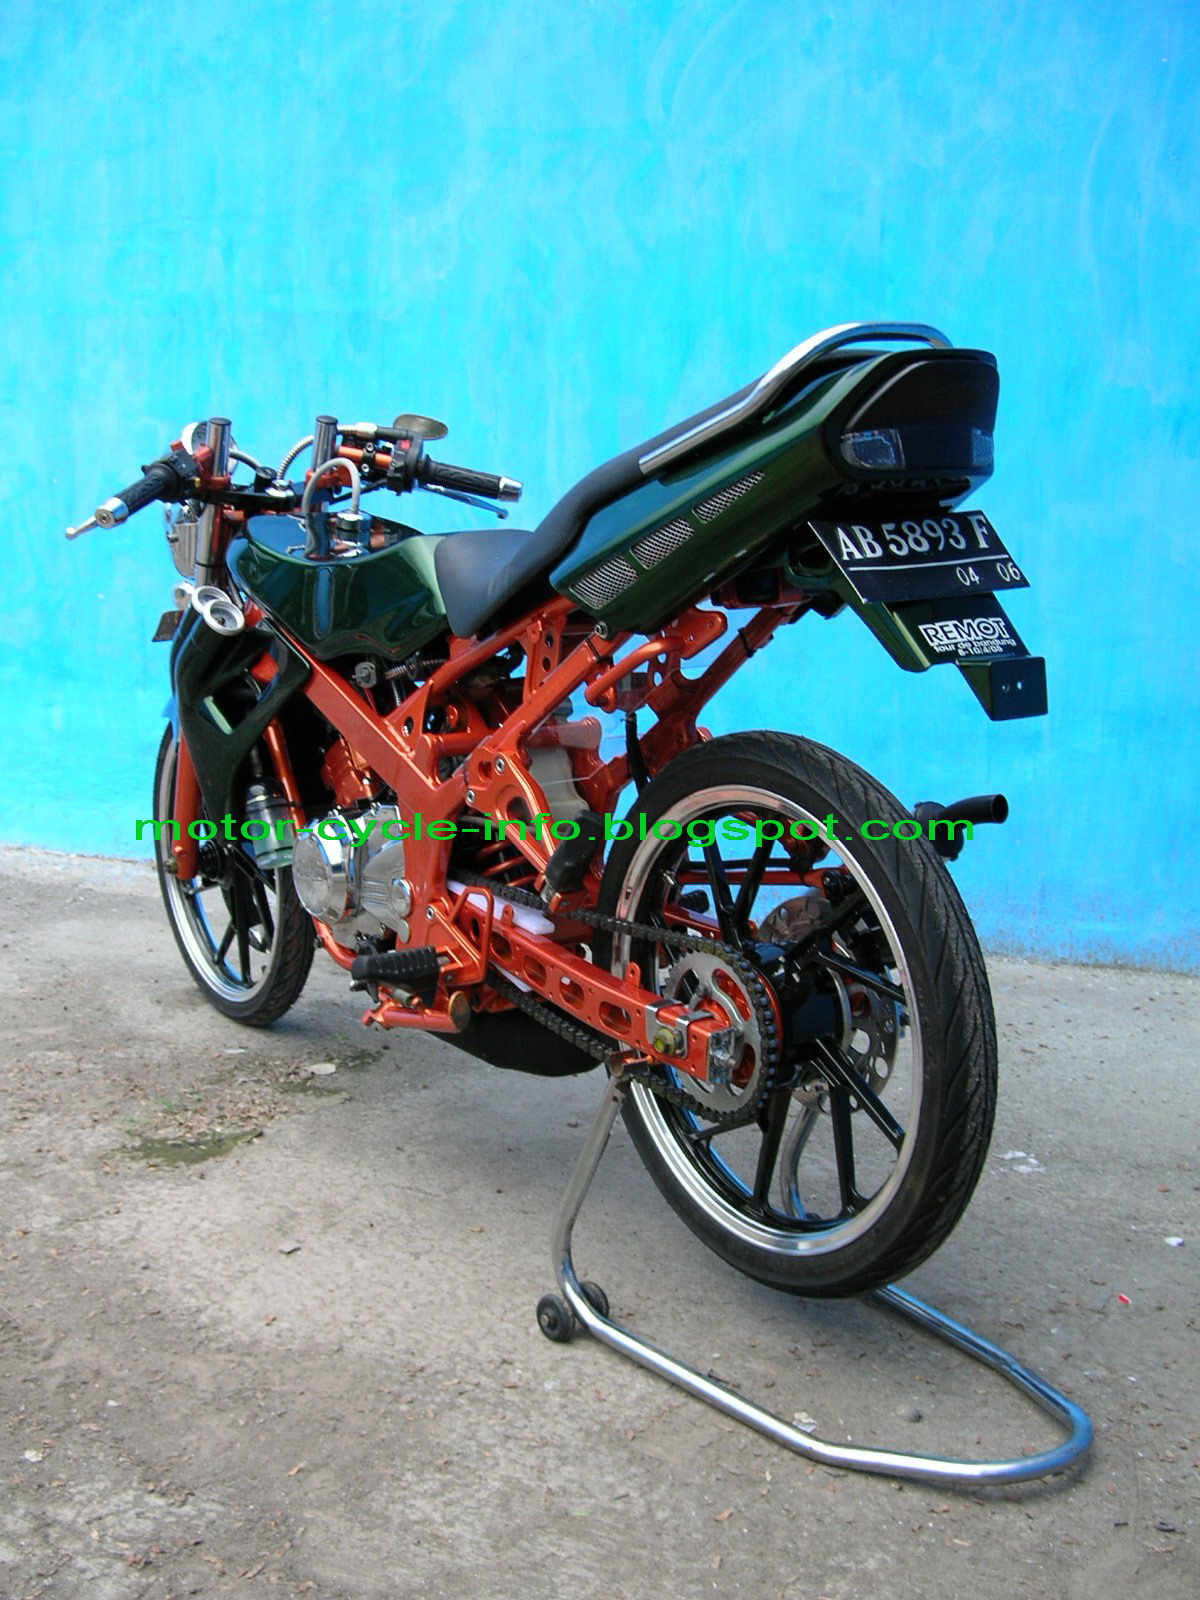 Picture of Gambar Modif Motor Ninja